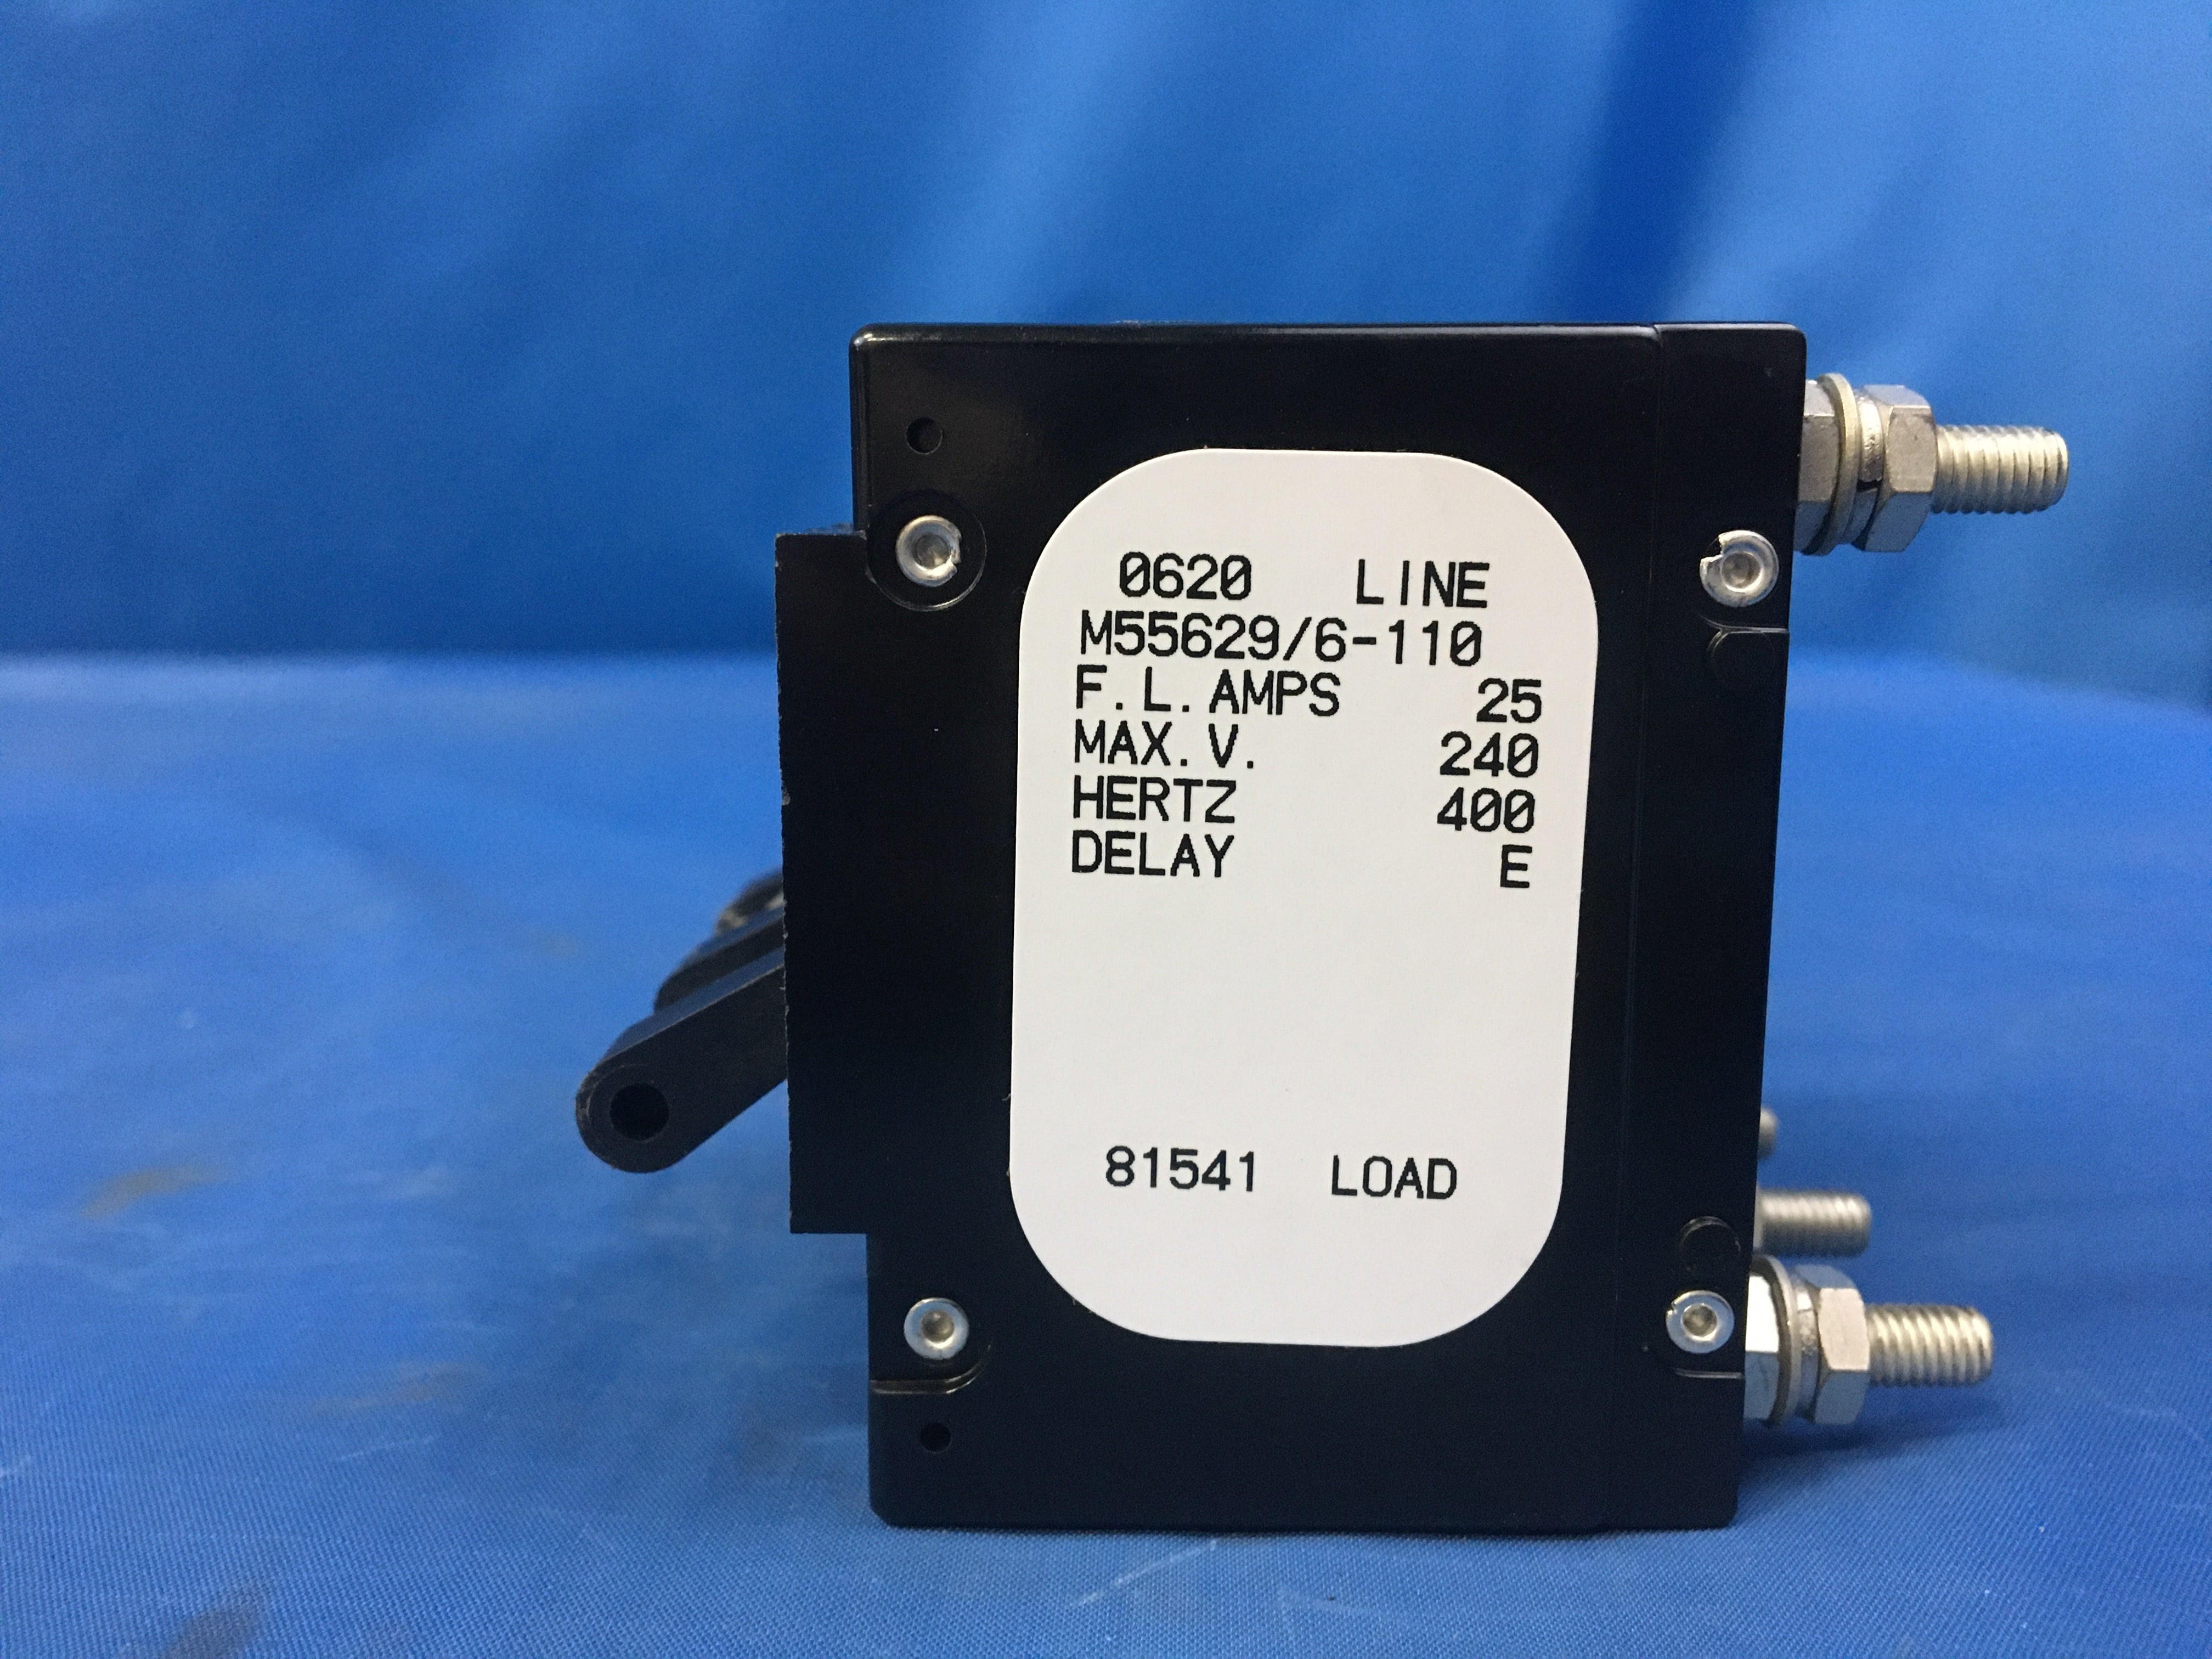 Airpax M55629/6-110 Circuit Breaker 25A/240V/400HZ NSN:5925-01-112-0650